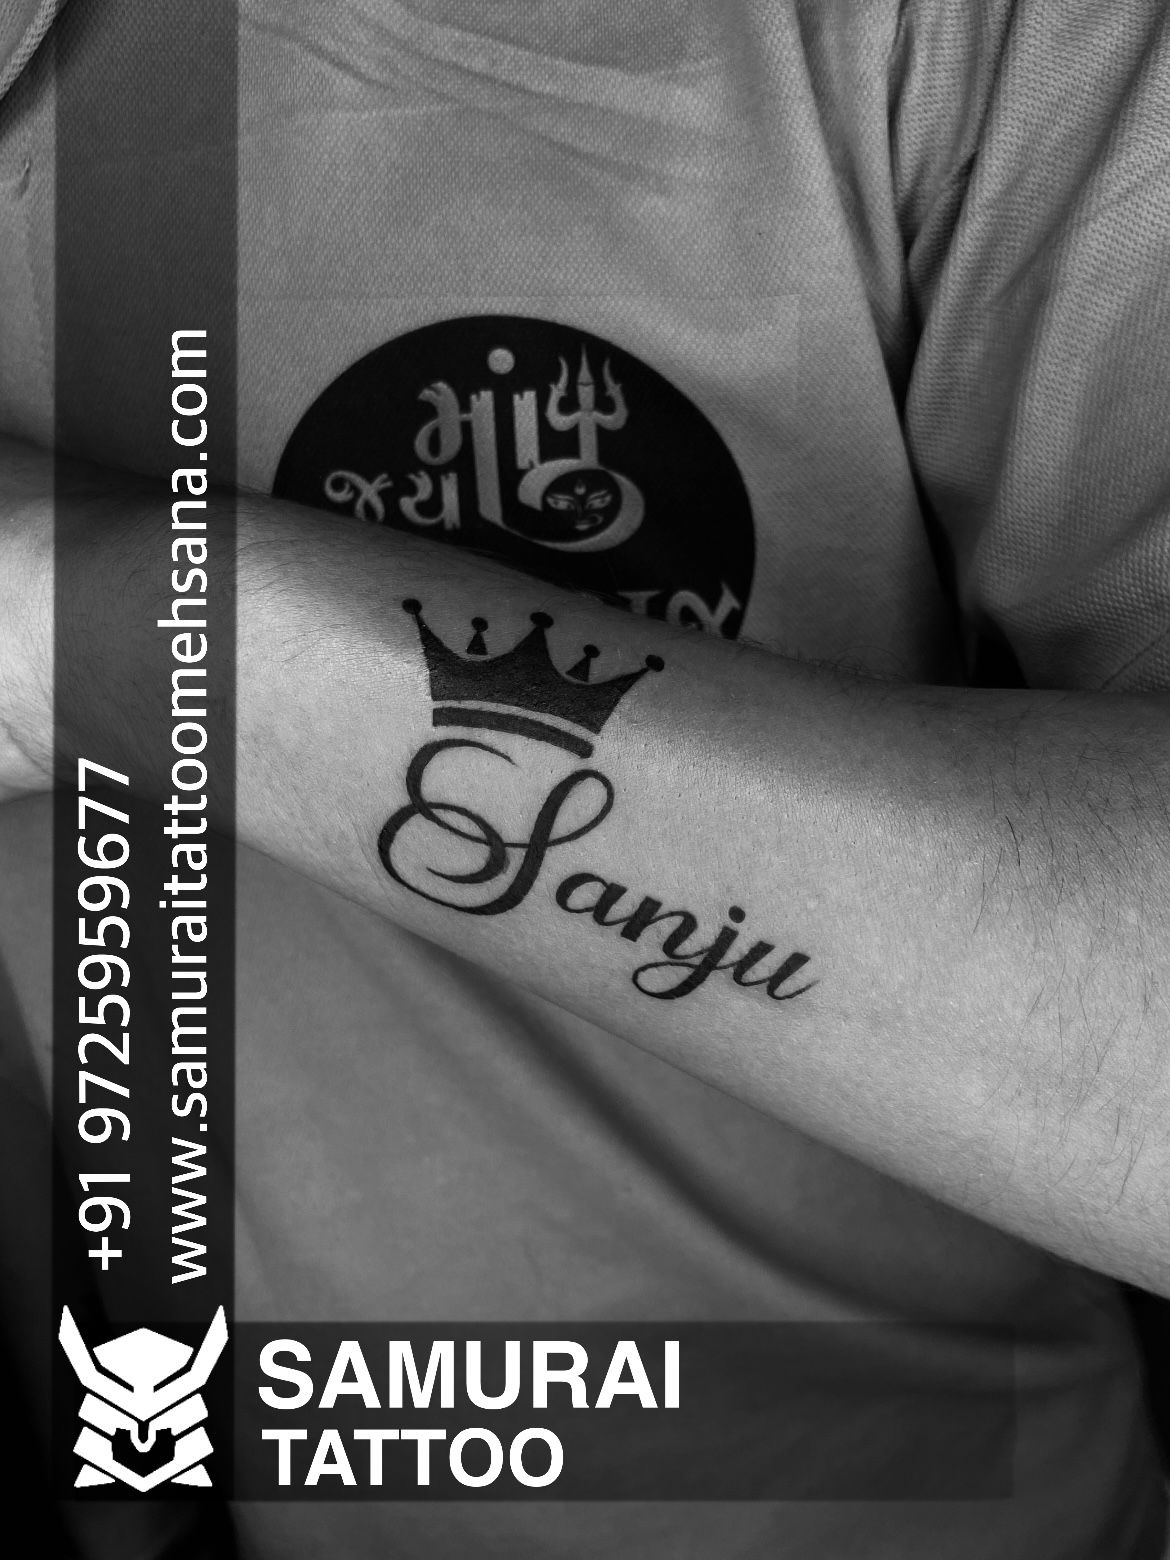 Sanju  tattoo words download free scetch